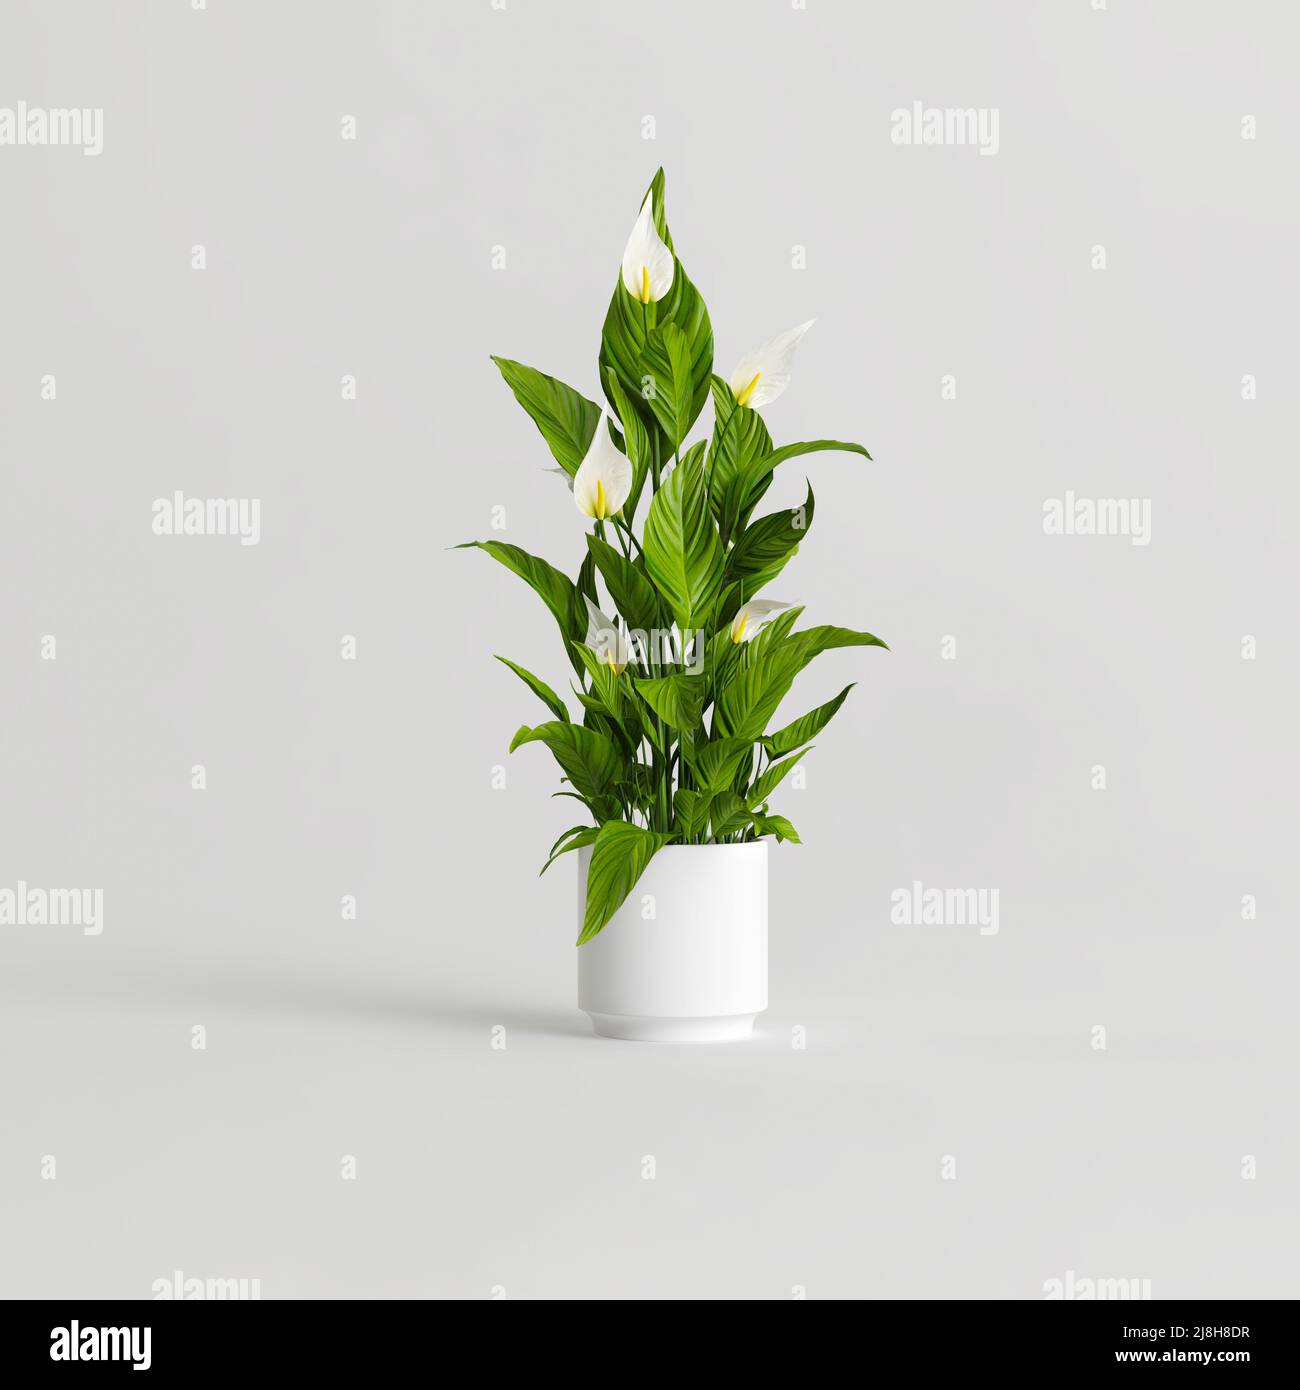 3d illustration of ceramic houseplants isolated on white background Stock Photo